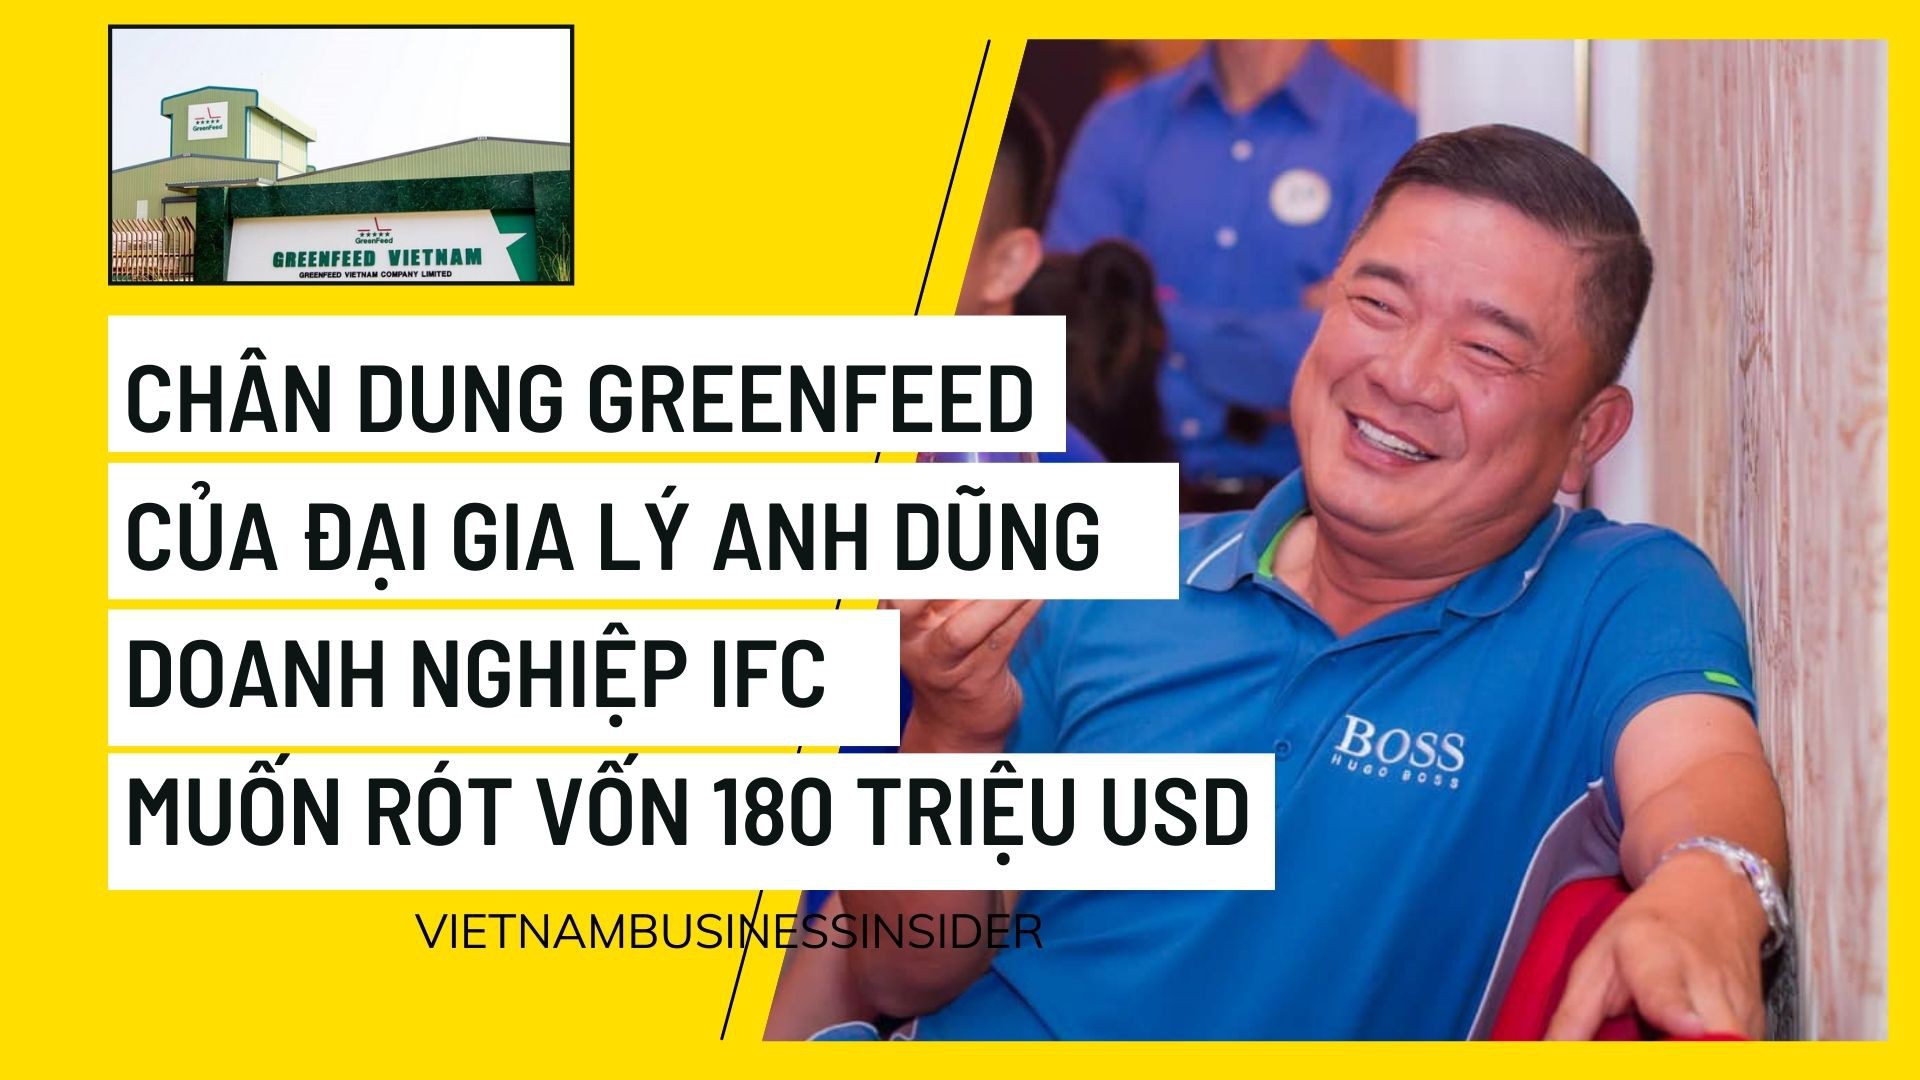 GREENFEED liên tục mở rộng trại hiệu quả trại Tây Ninh 2 chính thức cung  cấp heo thịt cho thị trường  GREENFEED Việt Nam